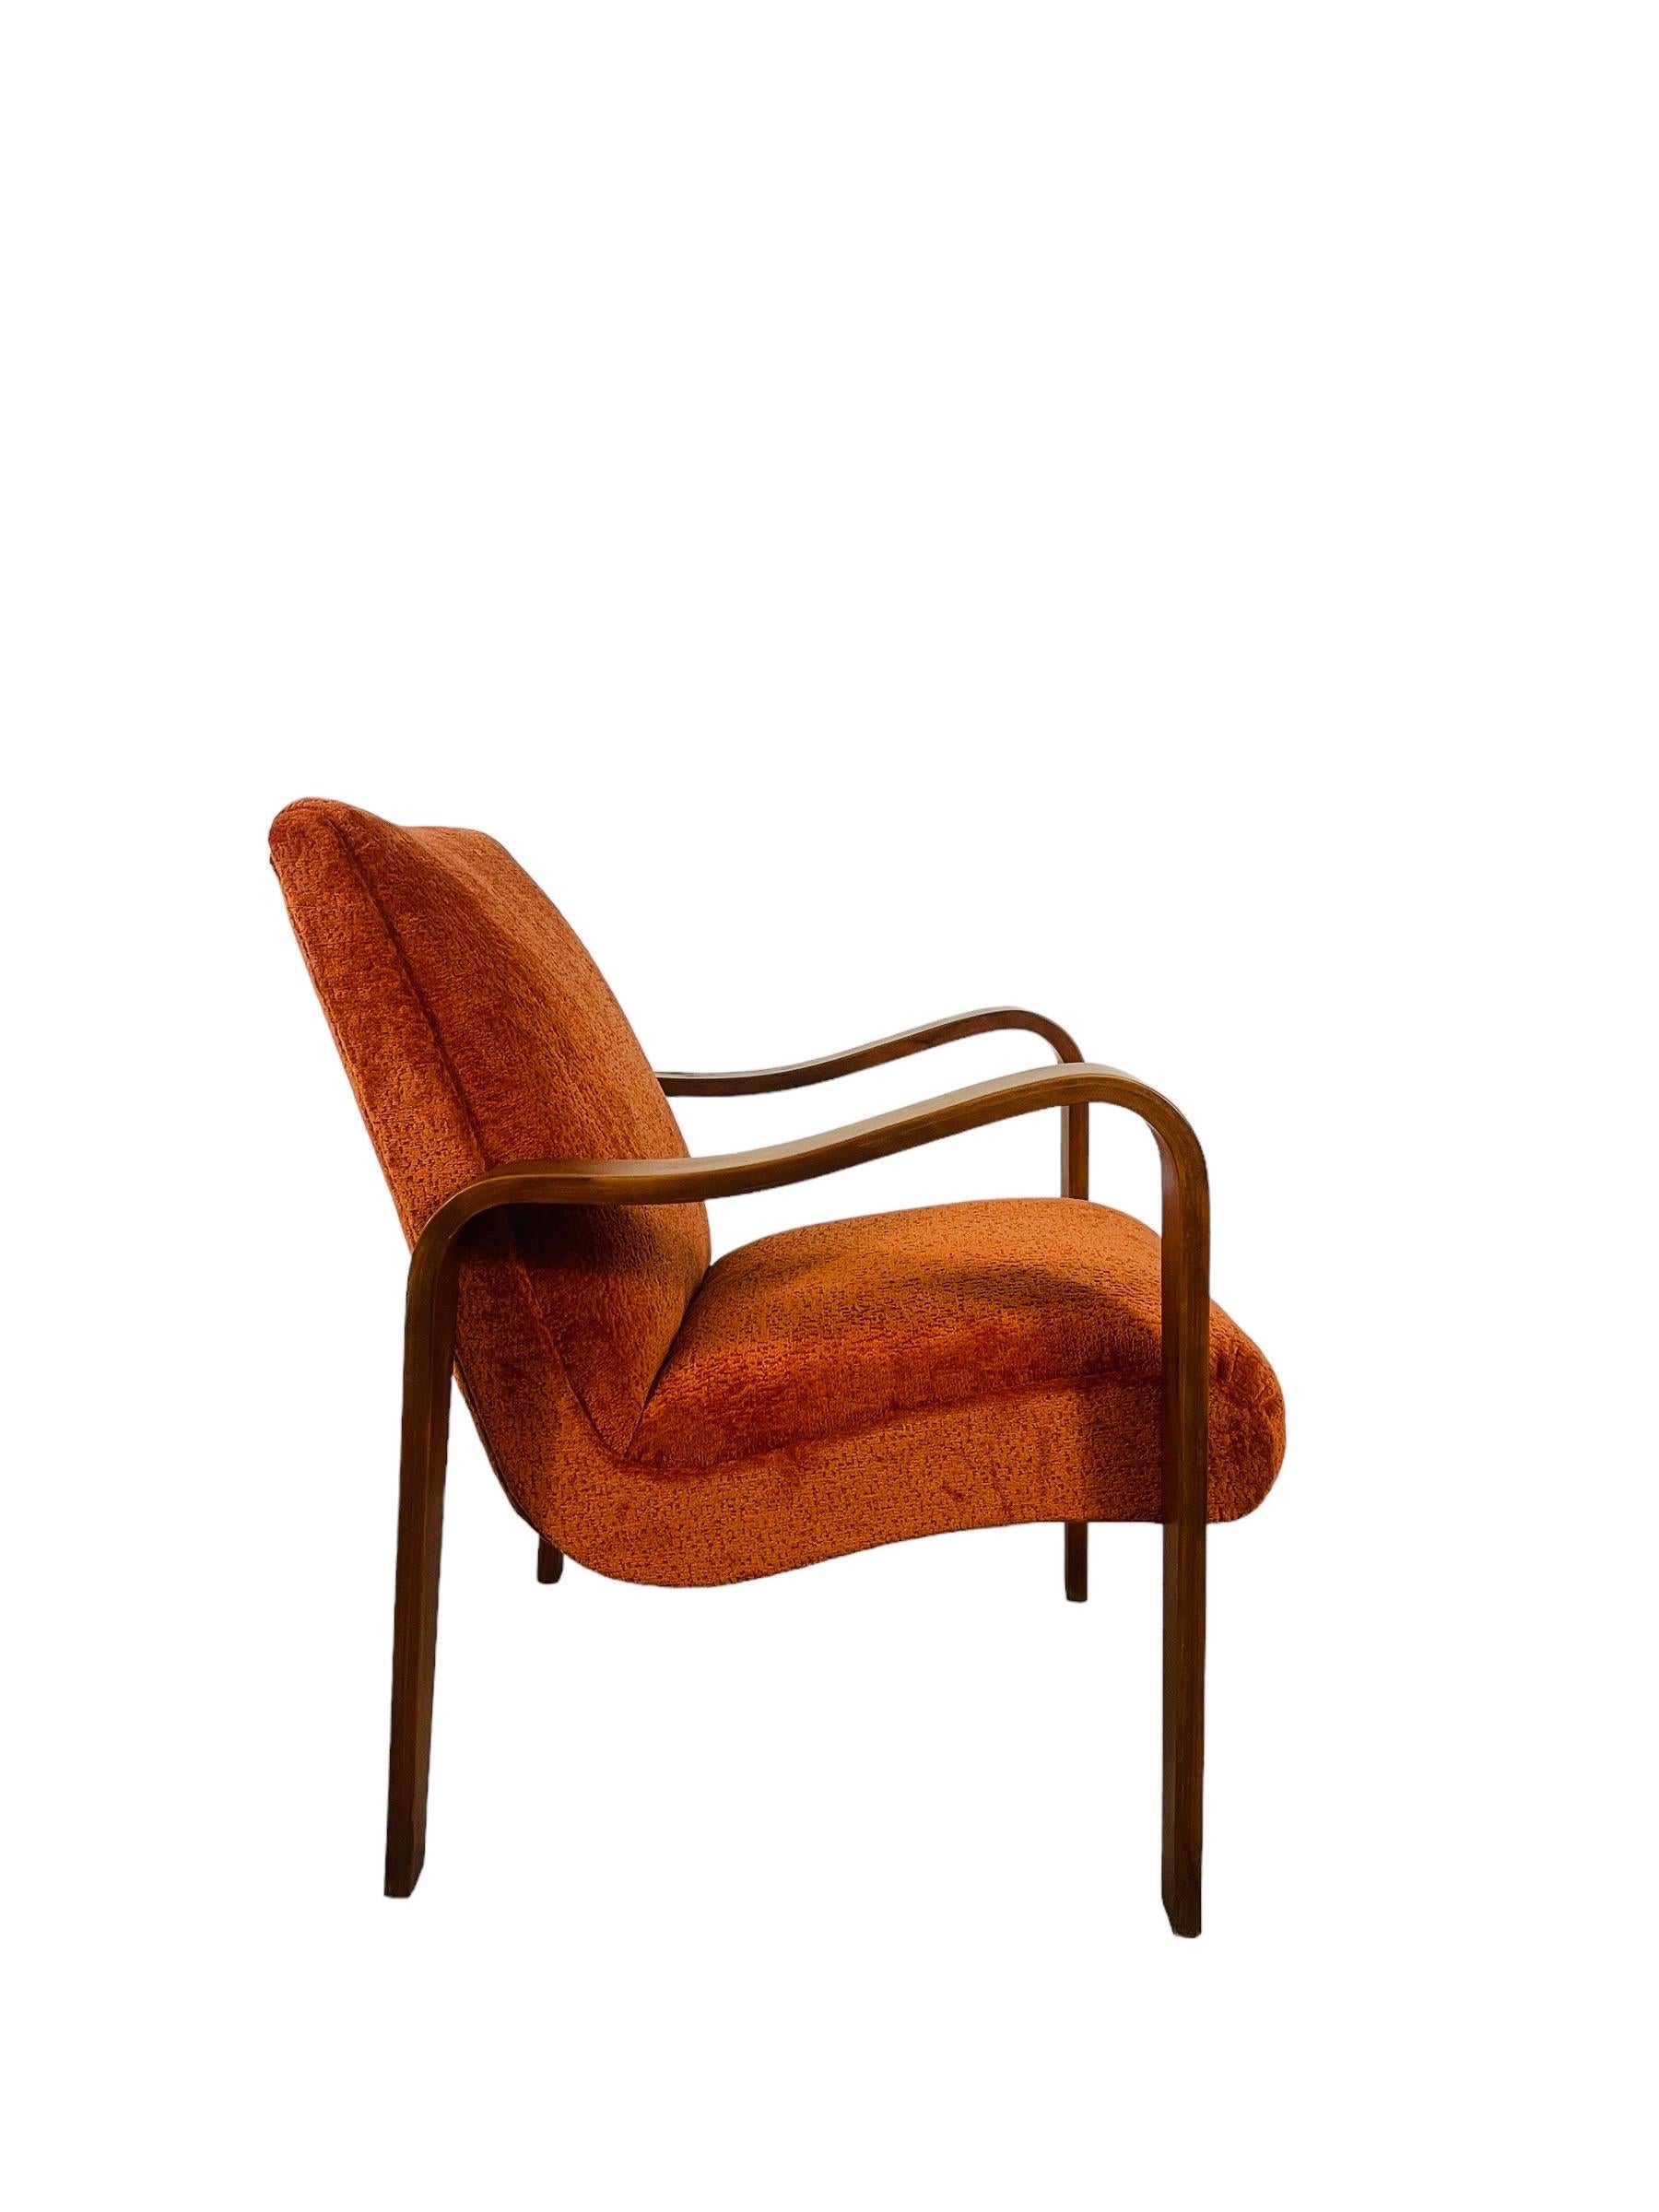 Plongez dans l'étreinte vibrante de notre chaise longue Thonet réimaginée, désormais habillée d'un somptueux tissu orange brûlé aussi accueillant qu'un chaleureux coucher de soleil. Cette icône de la modernité du milieu du siècle a été amoureusement